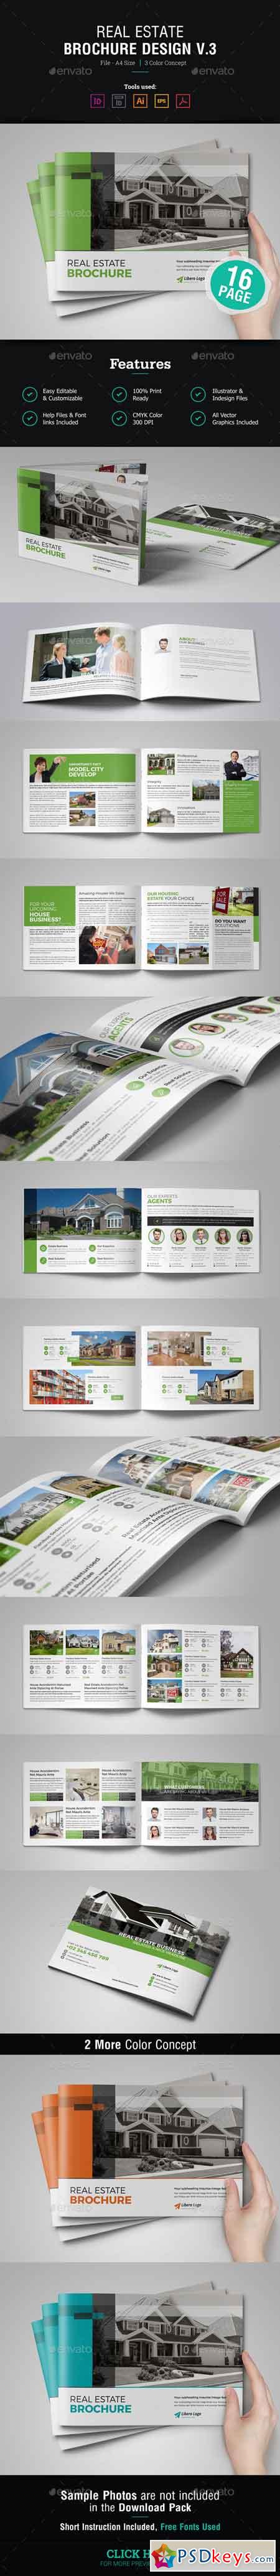 Real Estate Brochure Design v3 20081603